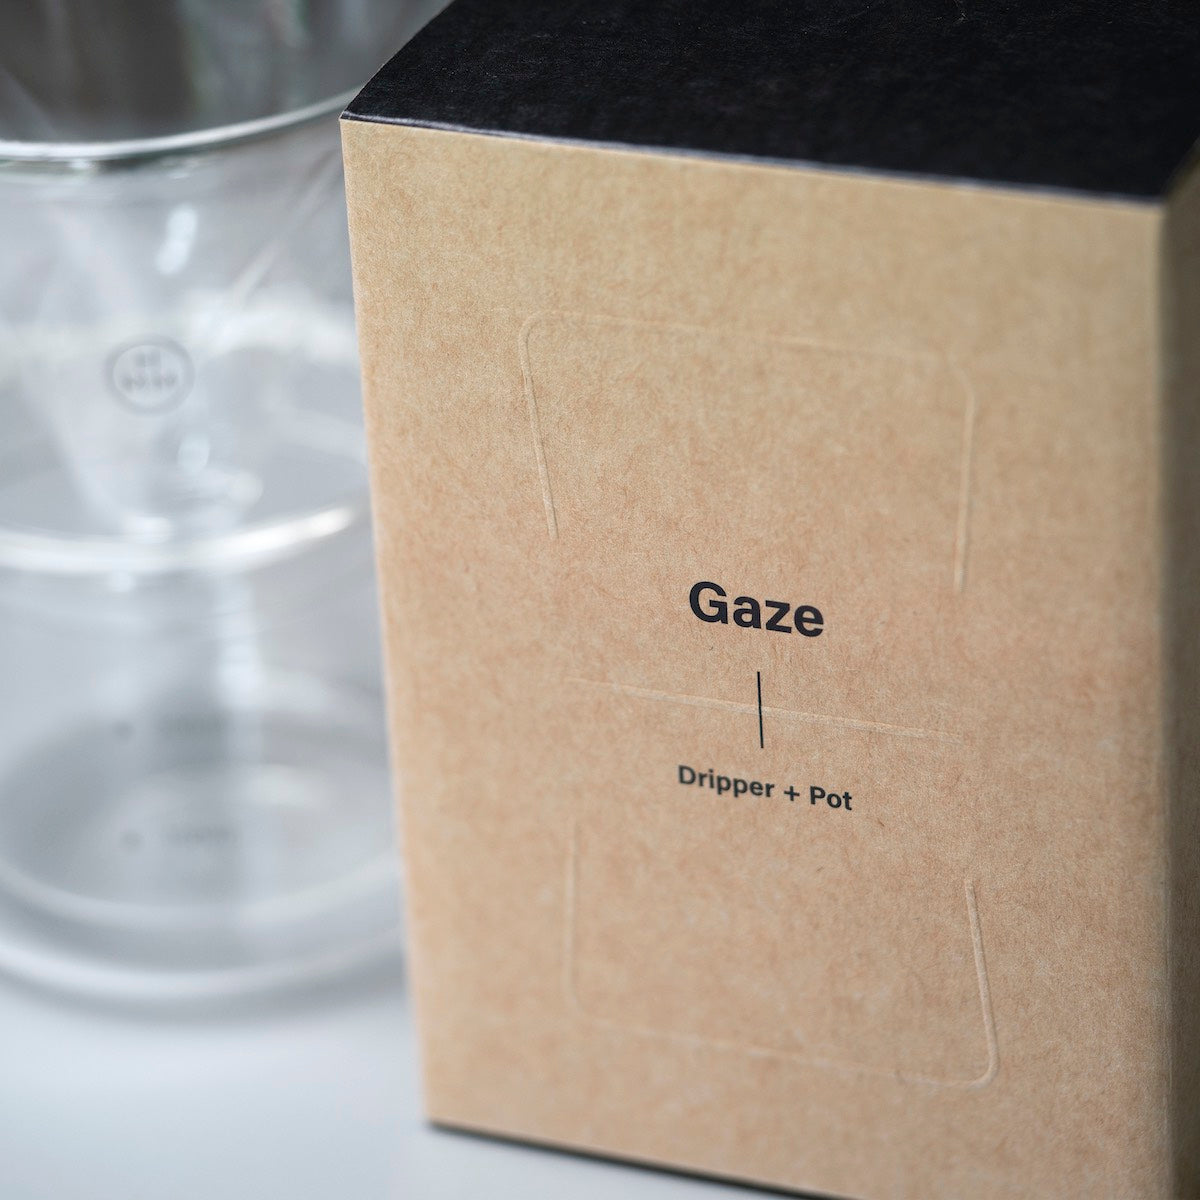 HMM GAZE Dripper + Pot packaging | THE COFFEE GOODS